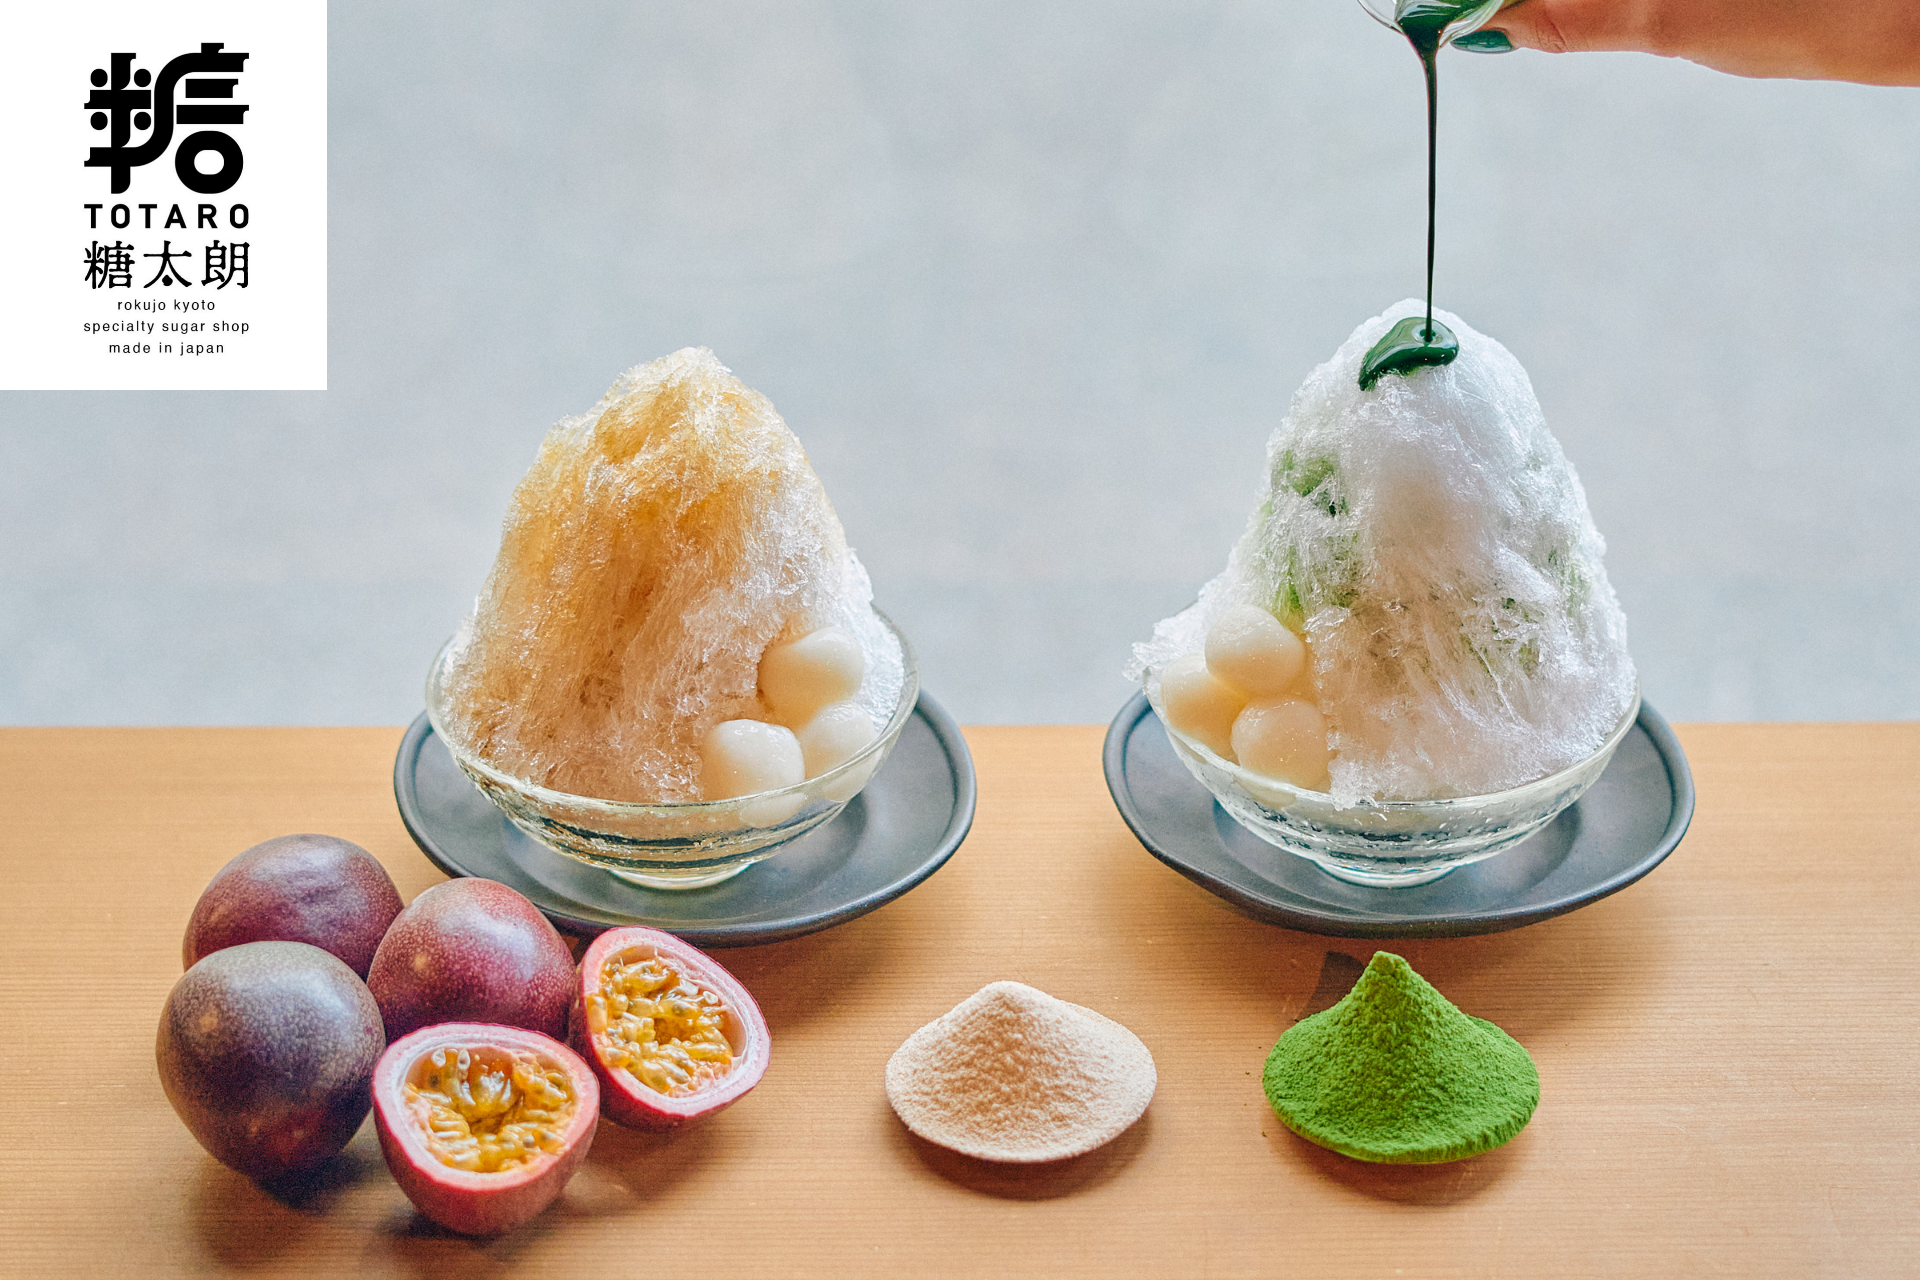 京都古民居砂糖專賣店「糖太朗」自6月23日（星期五）推出夏季限定兩種新口味刨冰